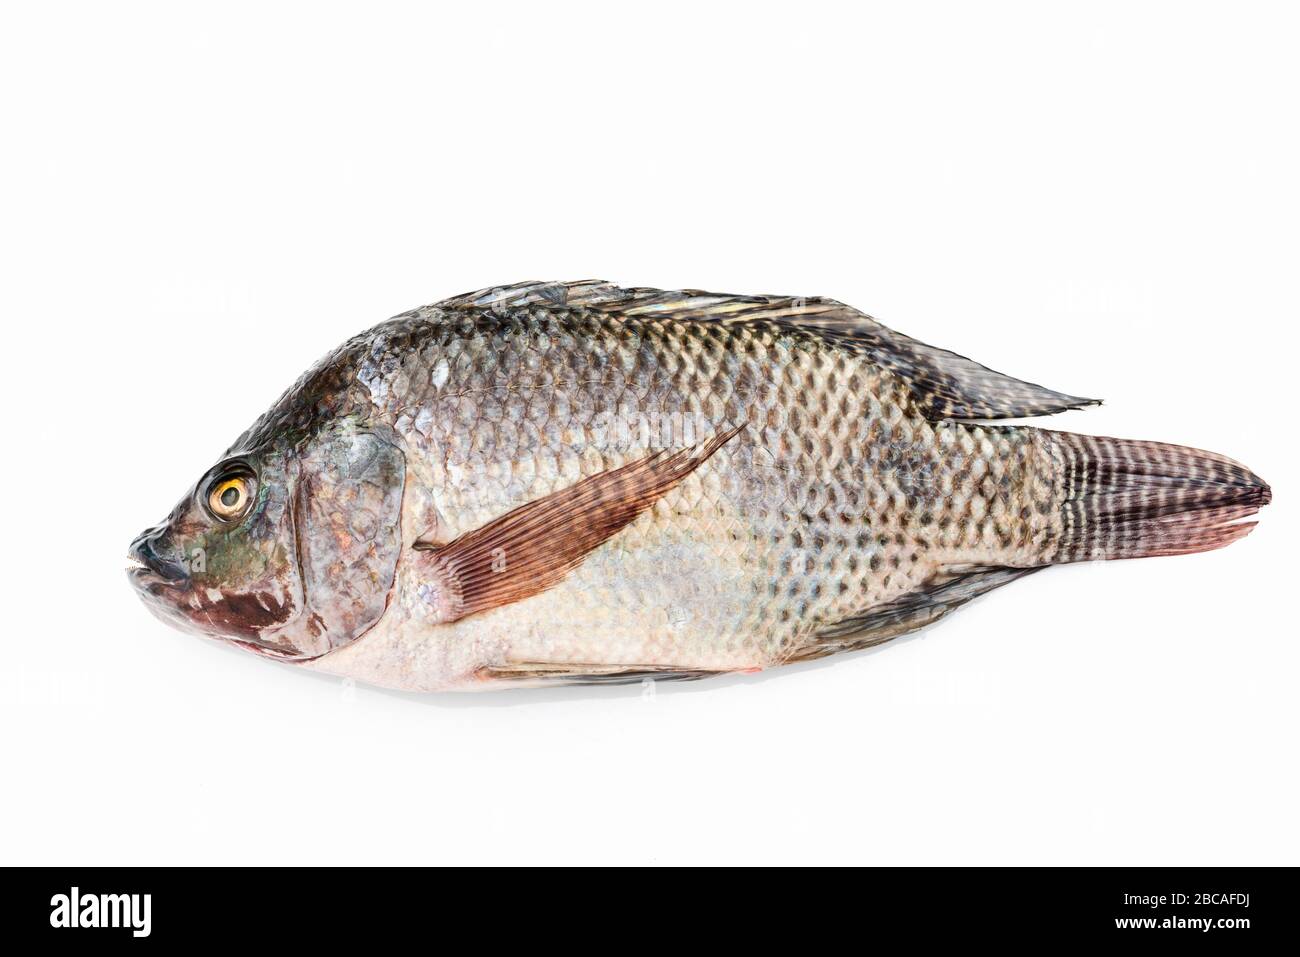 Nile tilapia fish isolated on white background. Stock Photo